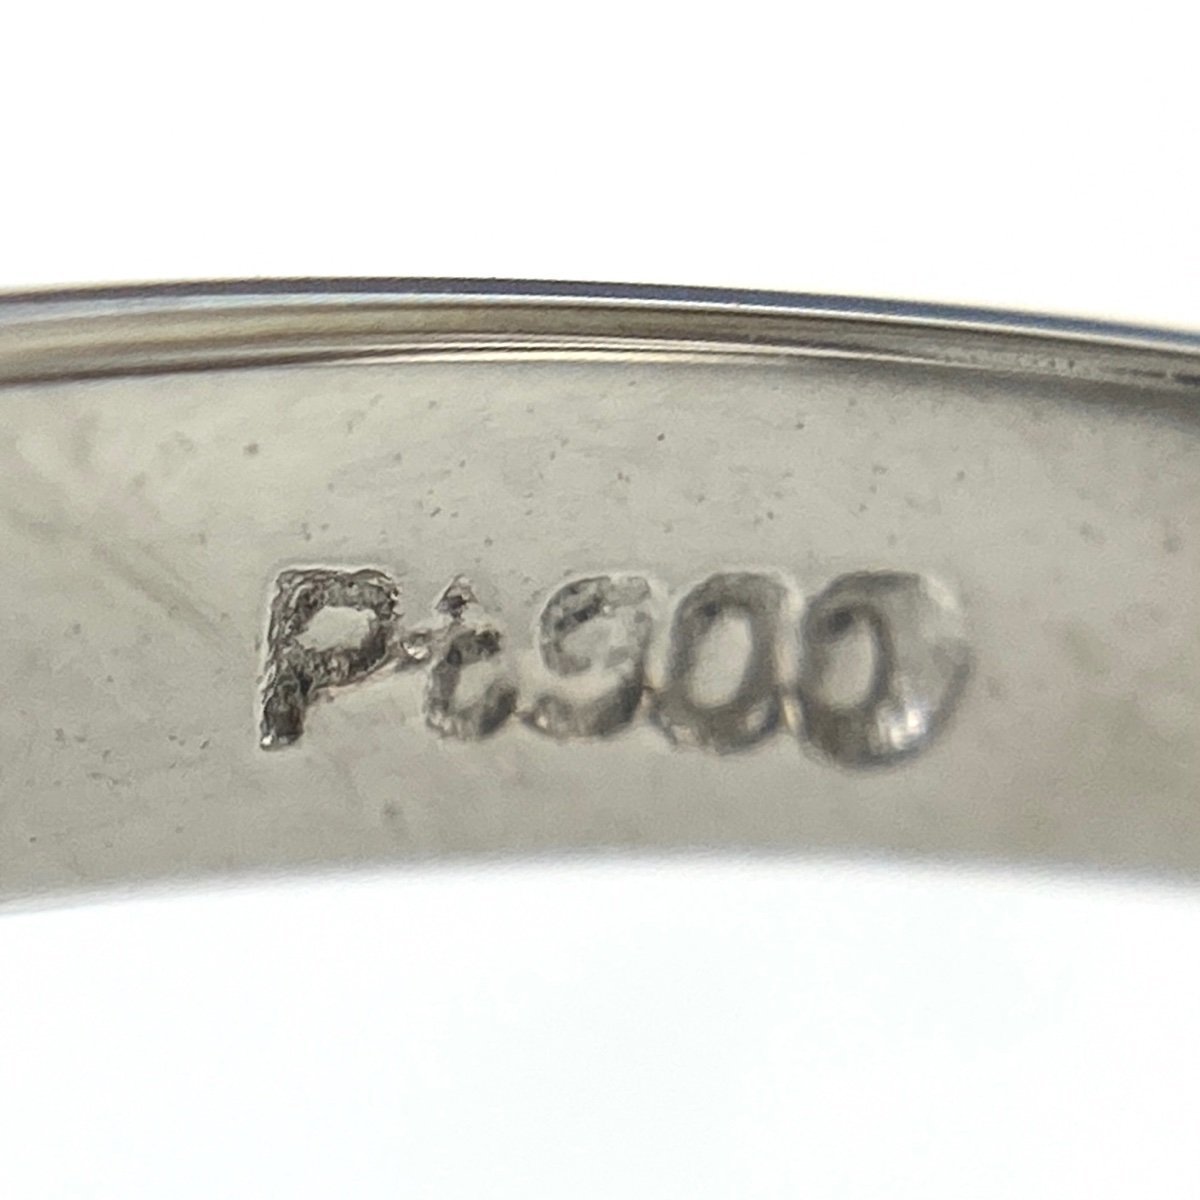 メレダイヤ デザインリング プラチナ 指輪 リング 11.5号 Pt900